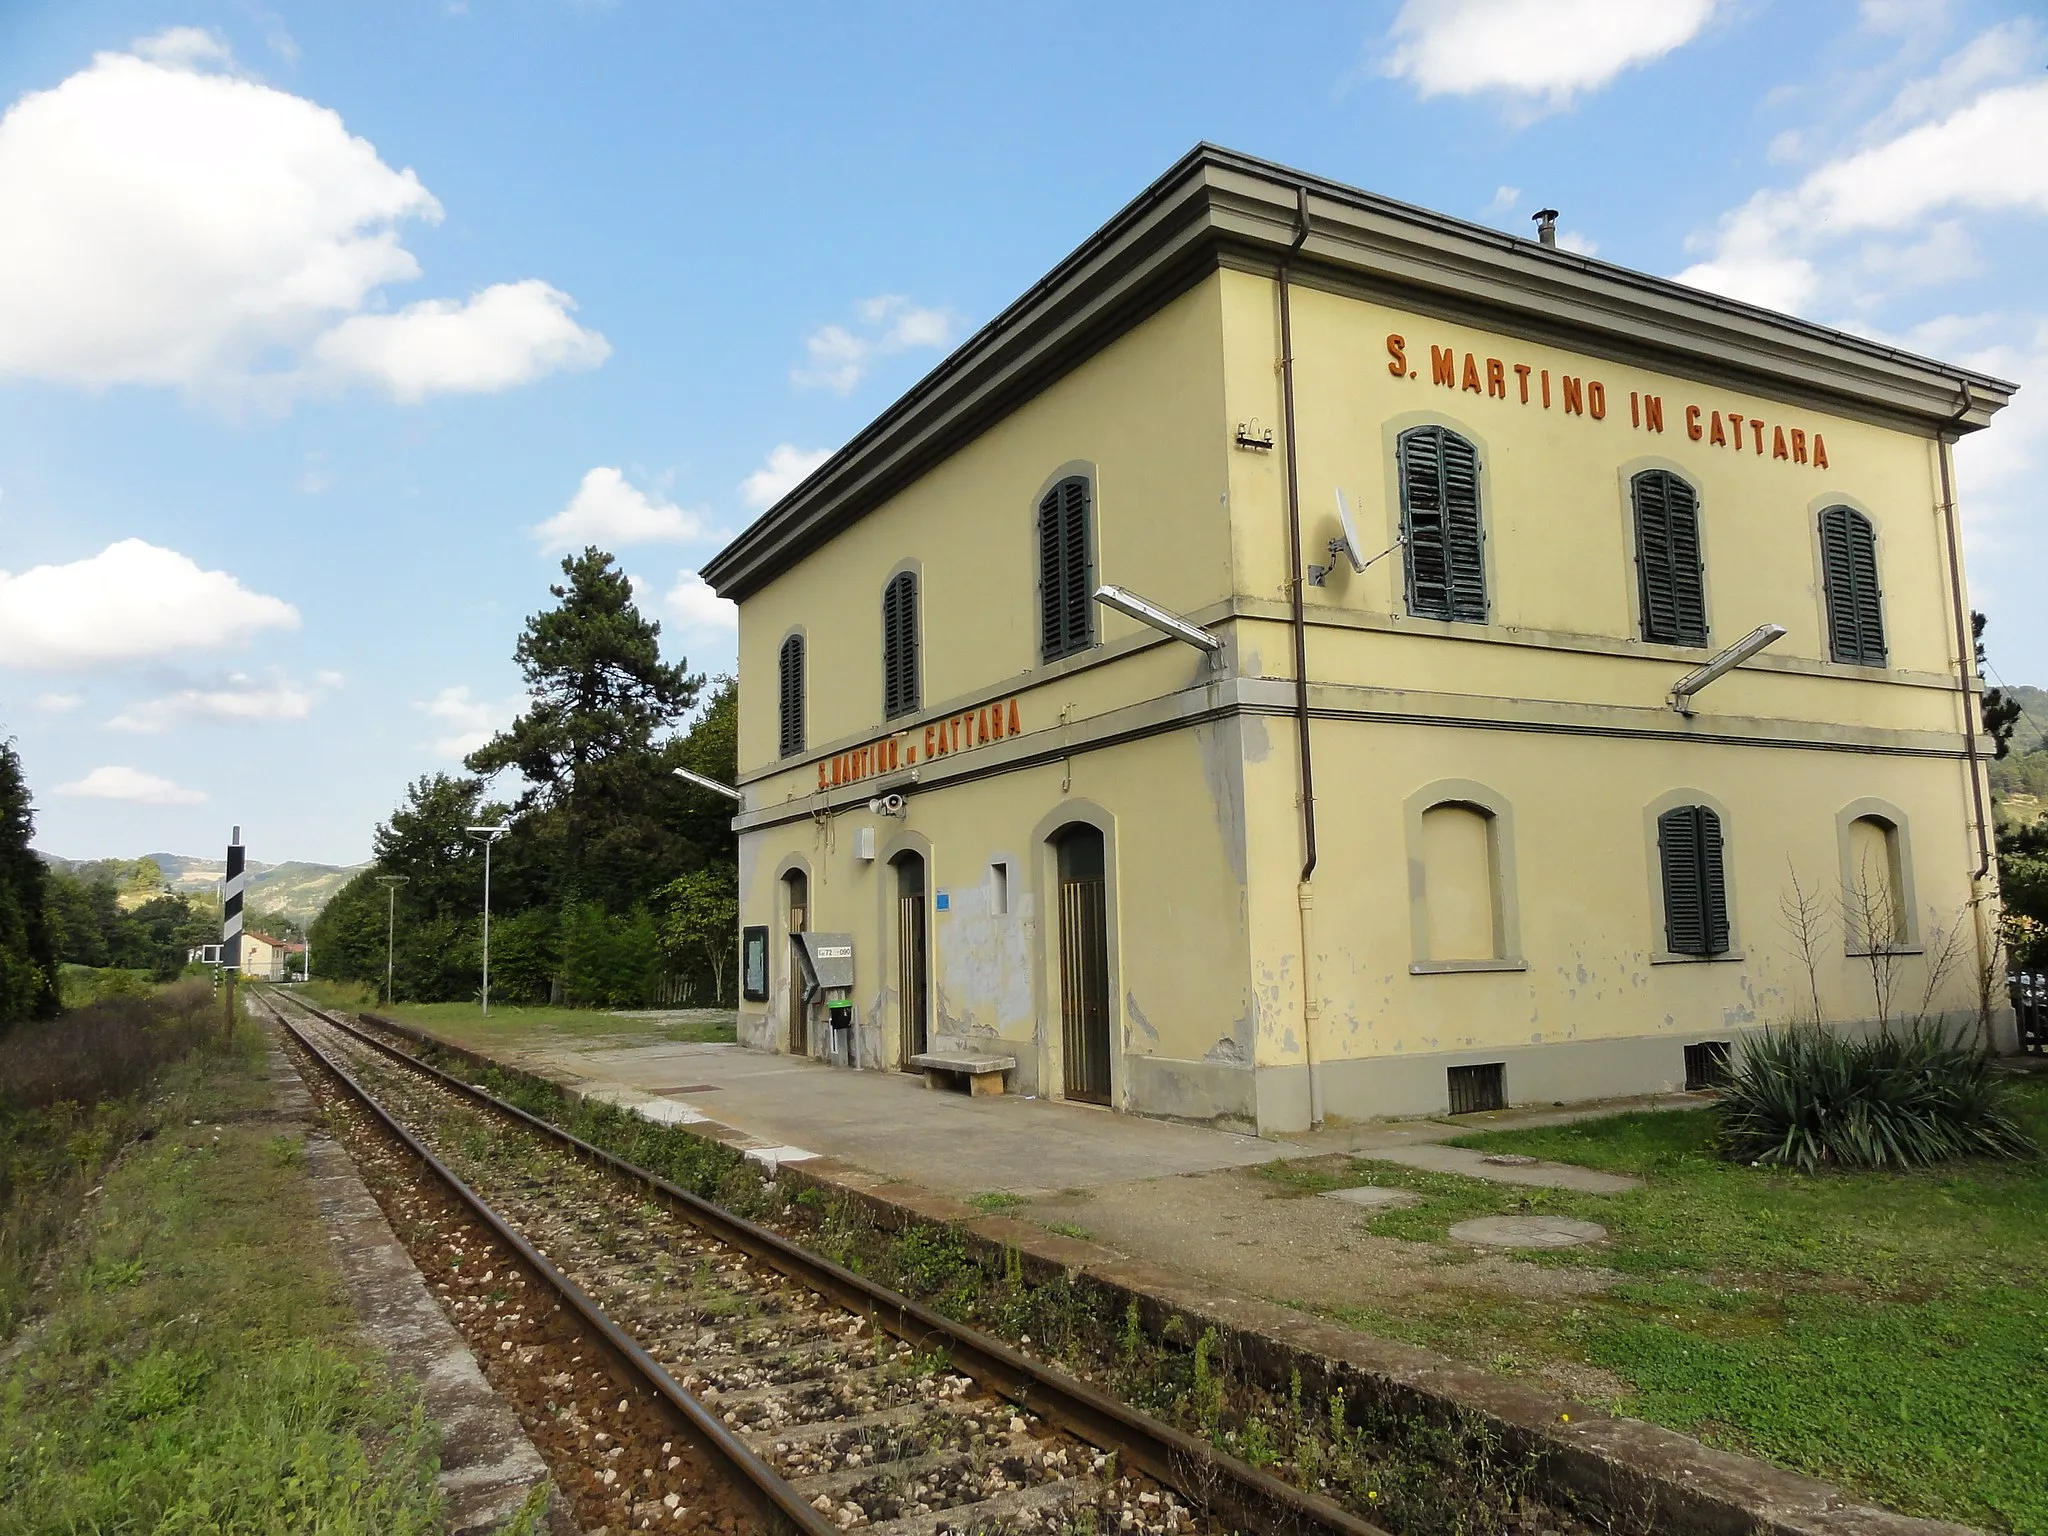 Photo showing: la stazione di S. Martino in Gattara